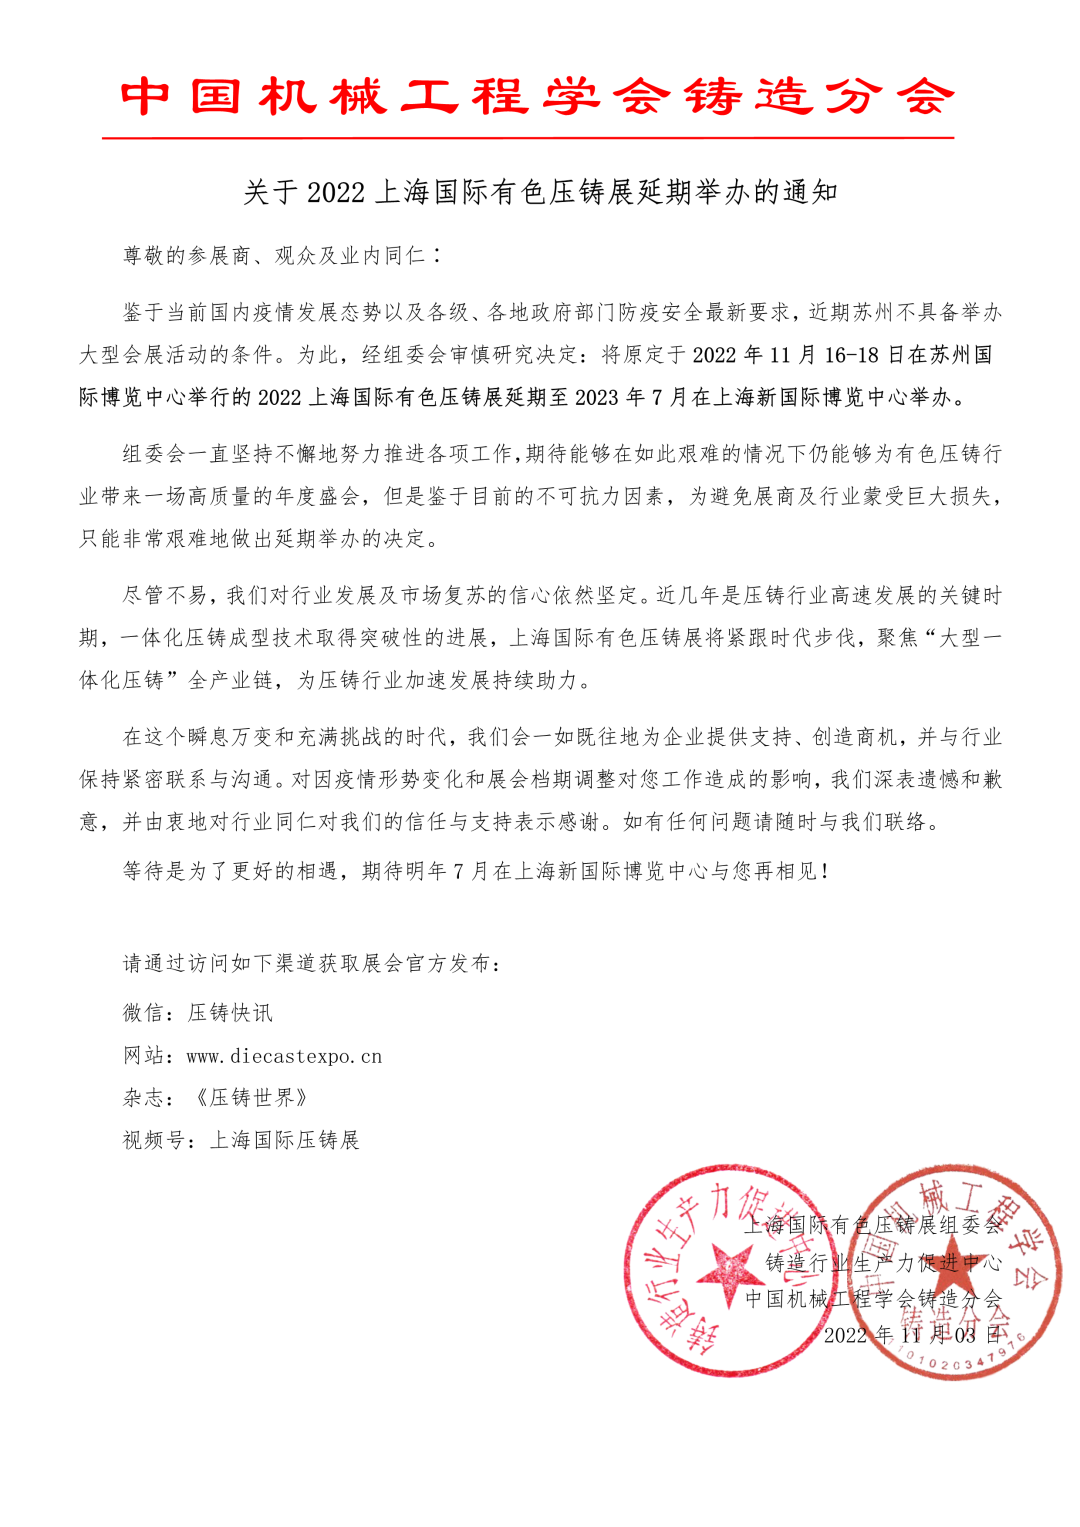 上海國際有色壓鑄展組委會正式通知